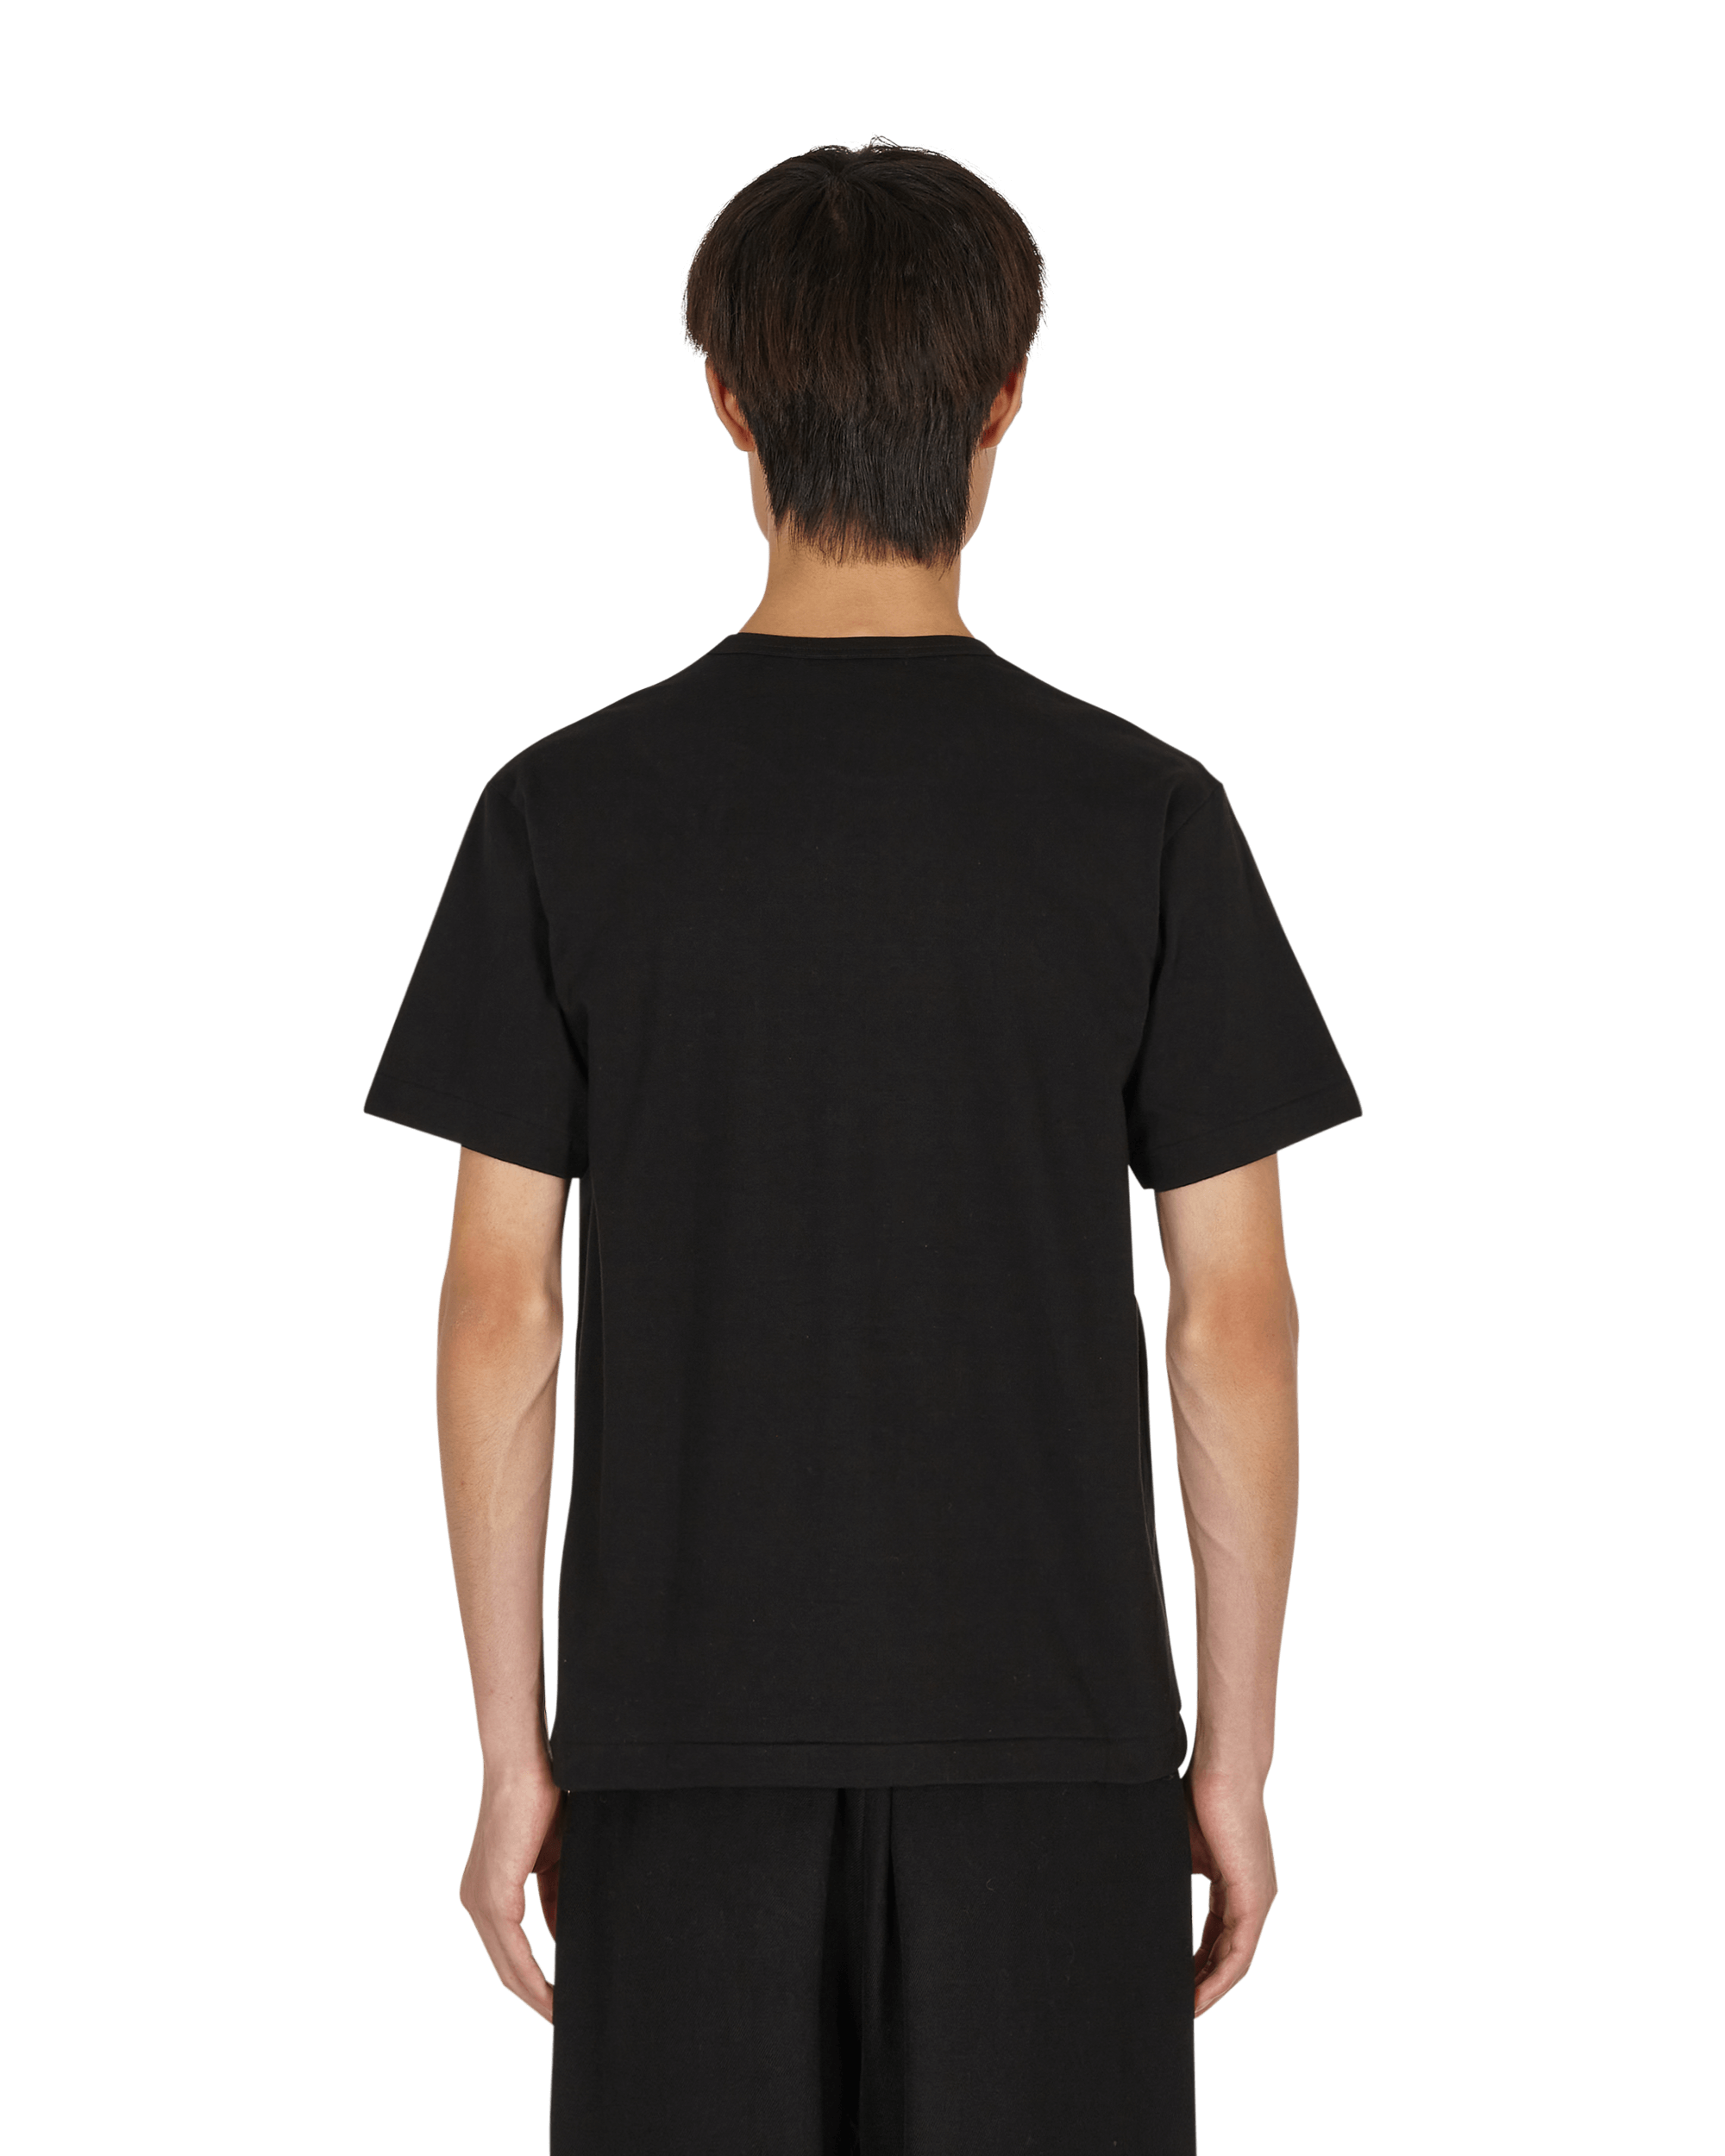 Comme Des Garcons Black T-Shirt Black T-Shirts Shortsleeve 1H-T004-W21 1